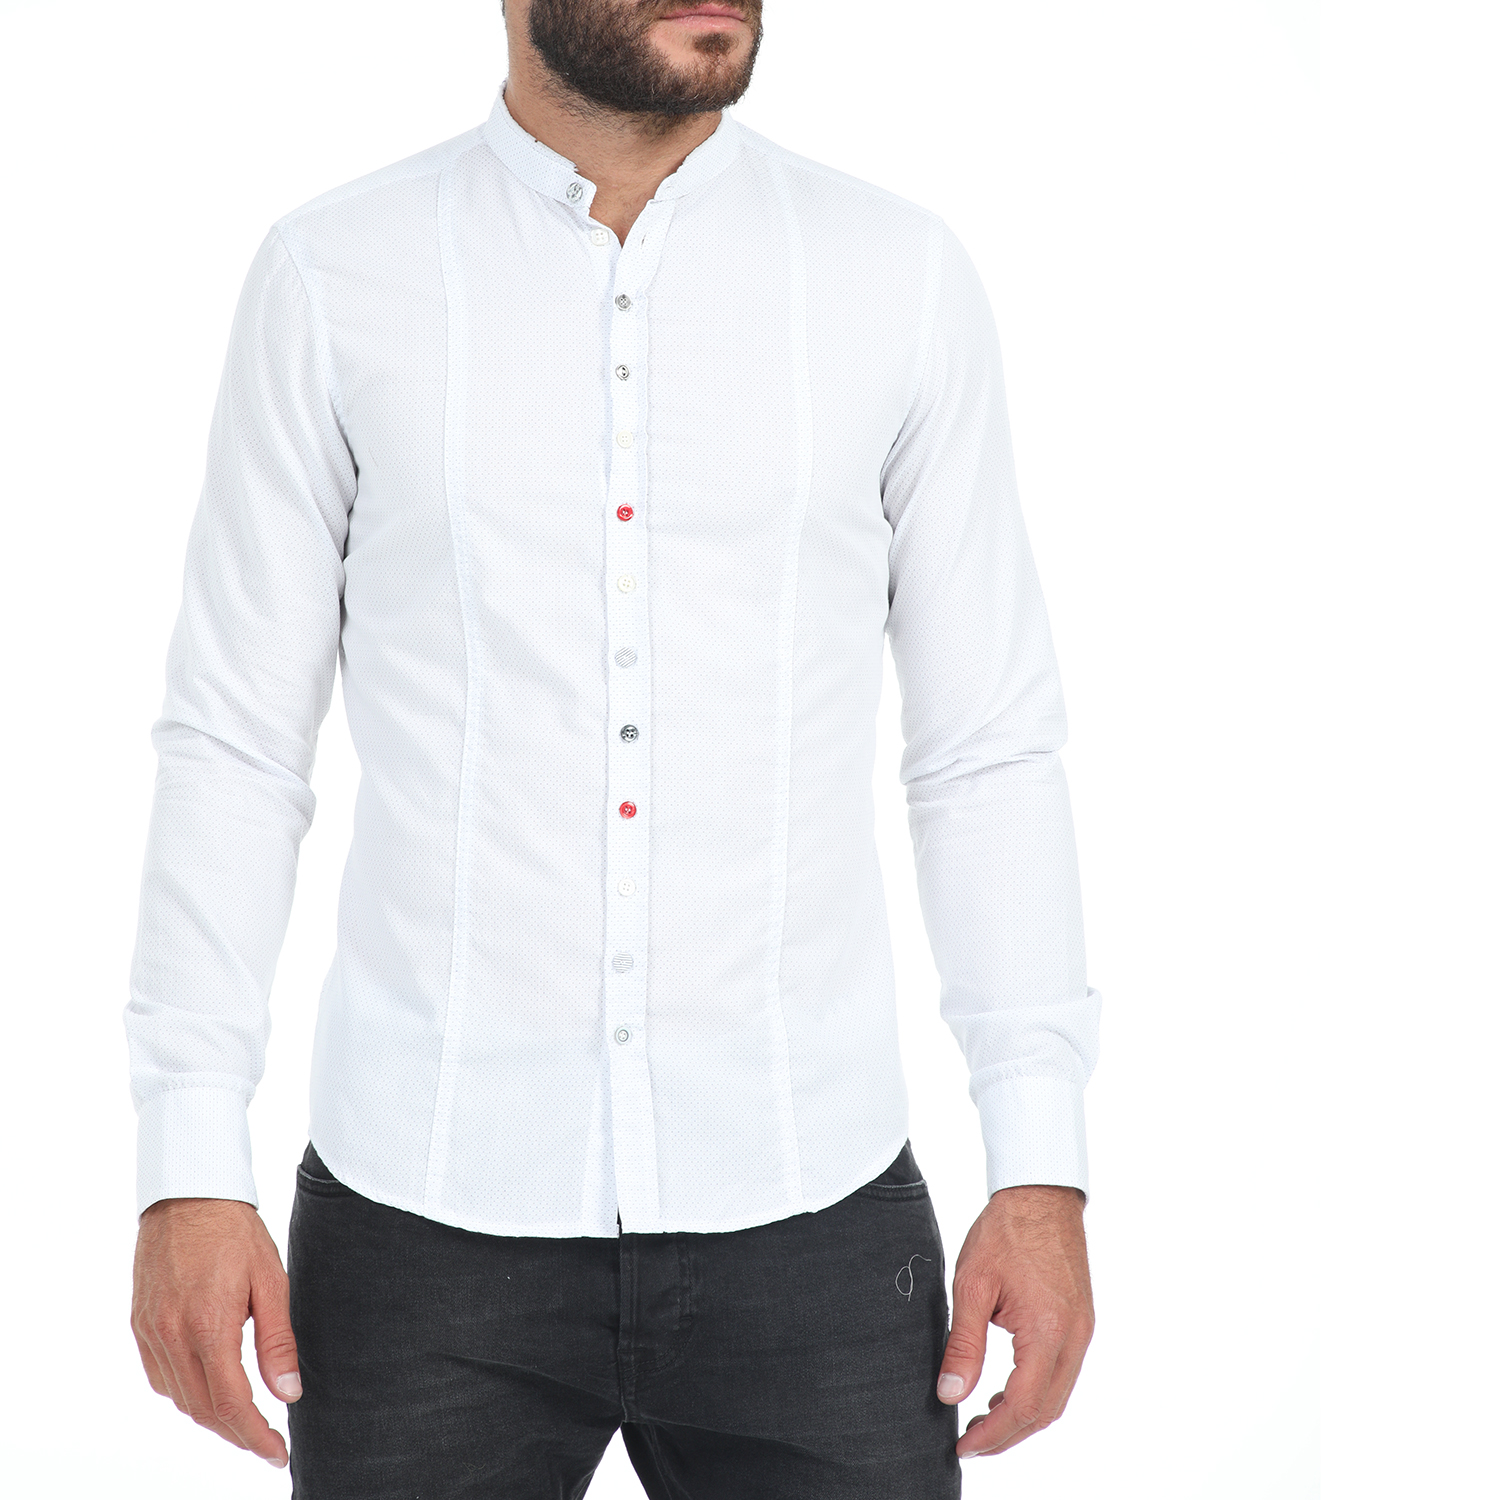 Ανδρικά/Ρούχα/Πουκάμισα/Μακρυμάνικα IMPERIAL - Ανδρικό πουκάμισο IMPERIAL λευκό